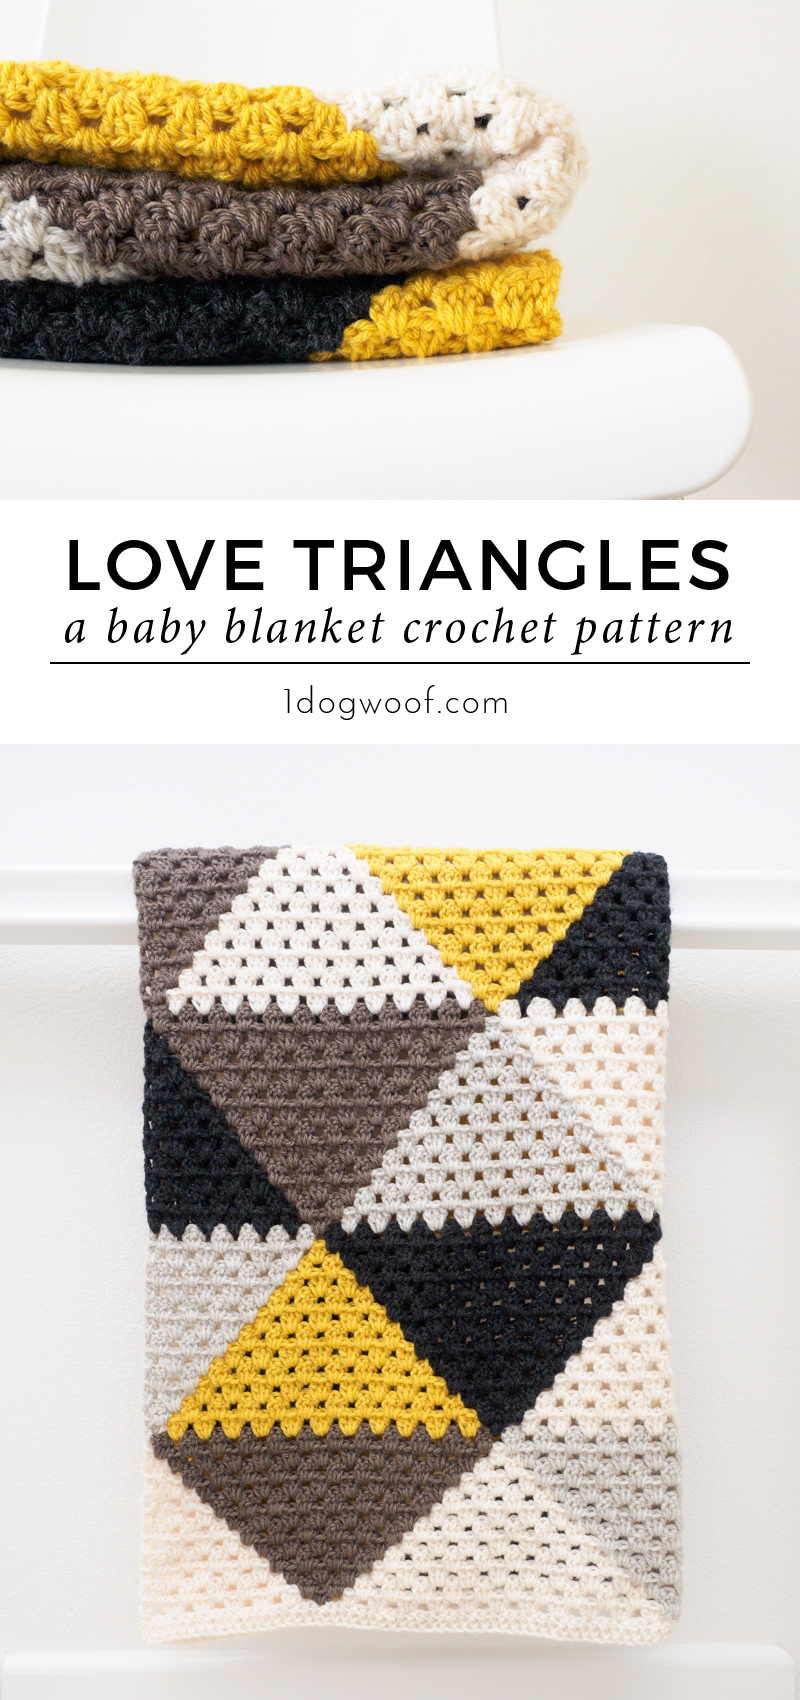 一个现代版传统的奶奶：三角恋老太条纹婴儿毯。在1dogwoof.com免费钩针图案